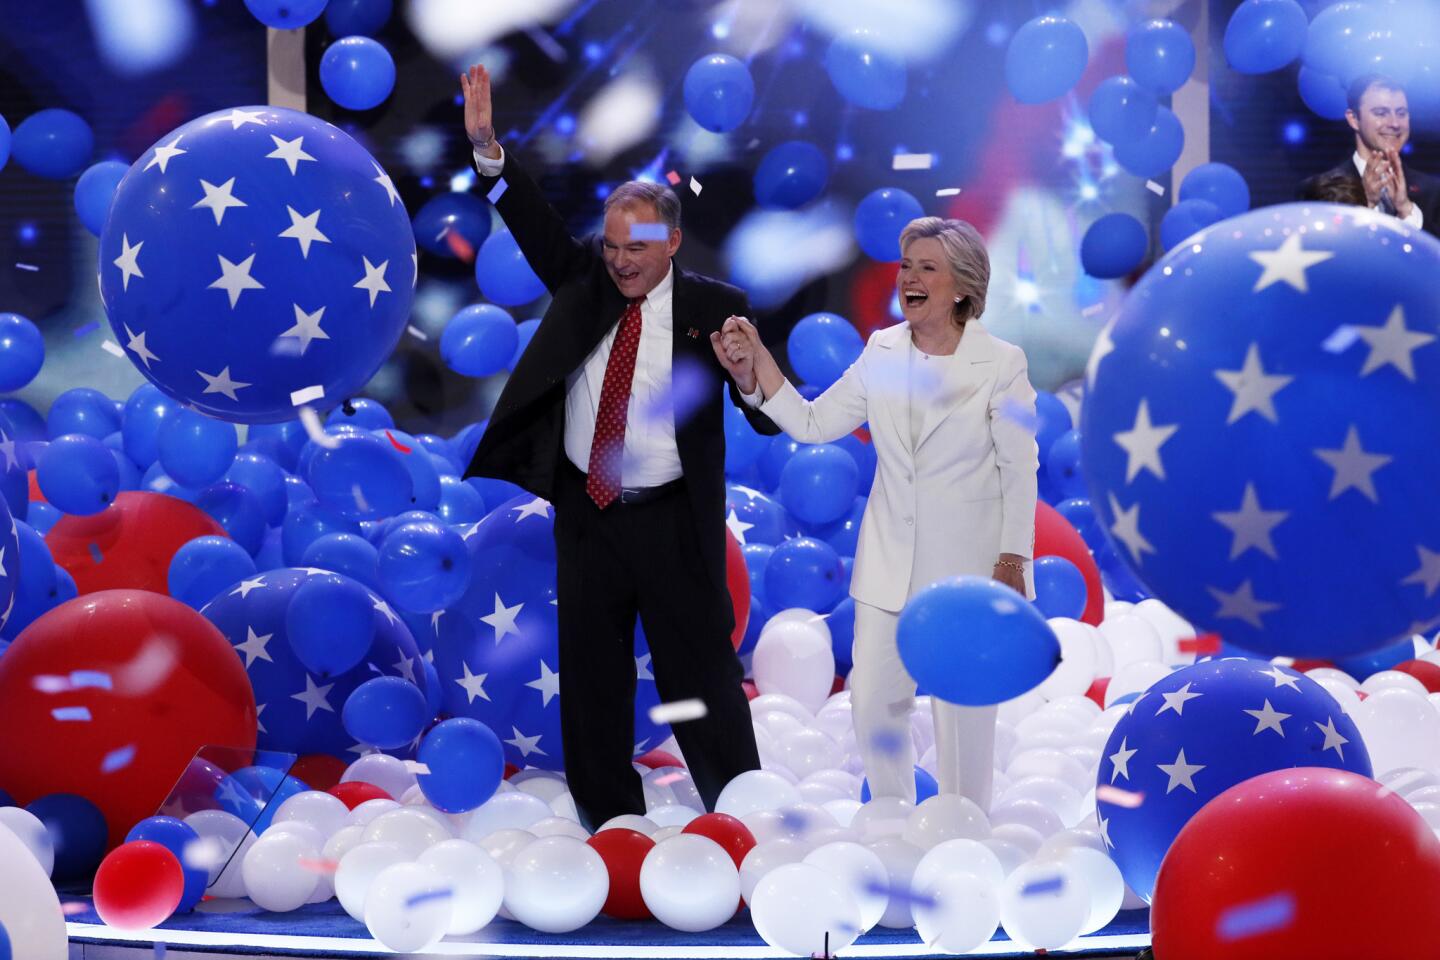 Hillary Clinton, Tim Kaine